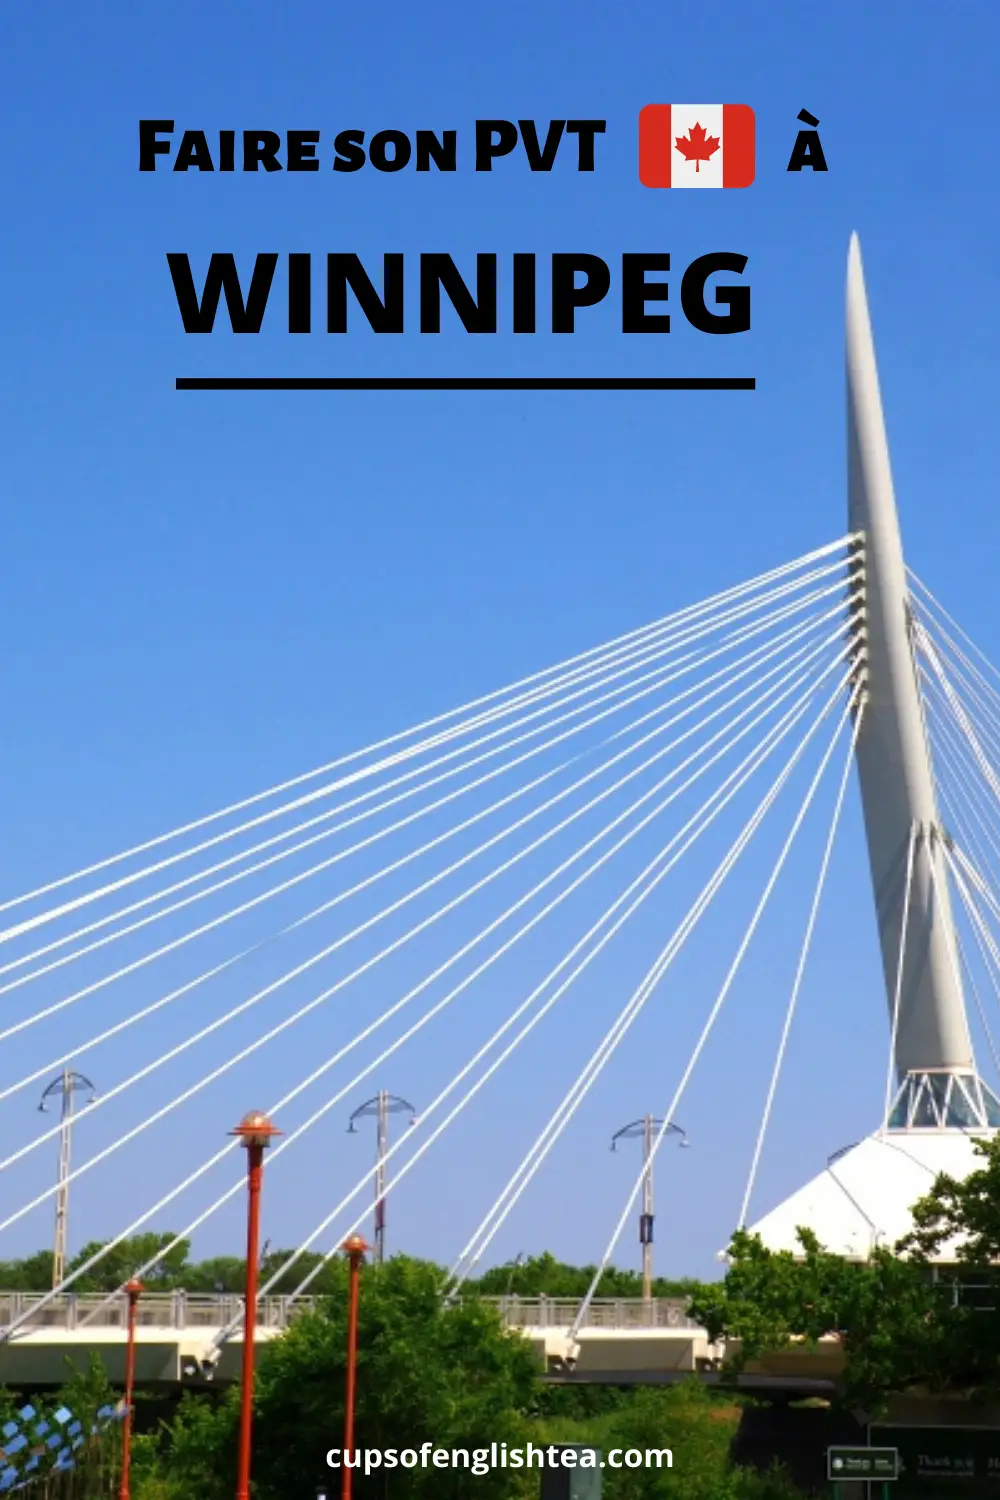 10 raisons de faire son PVT Canada à Winnipeg